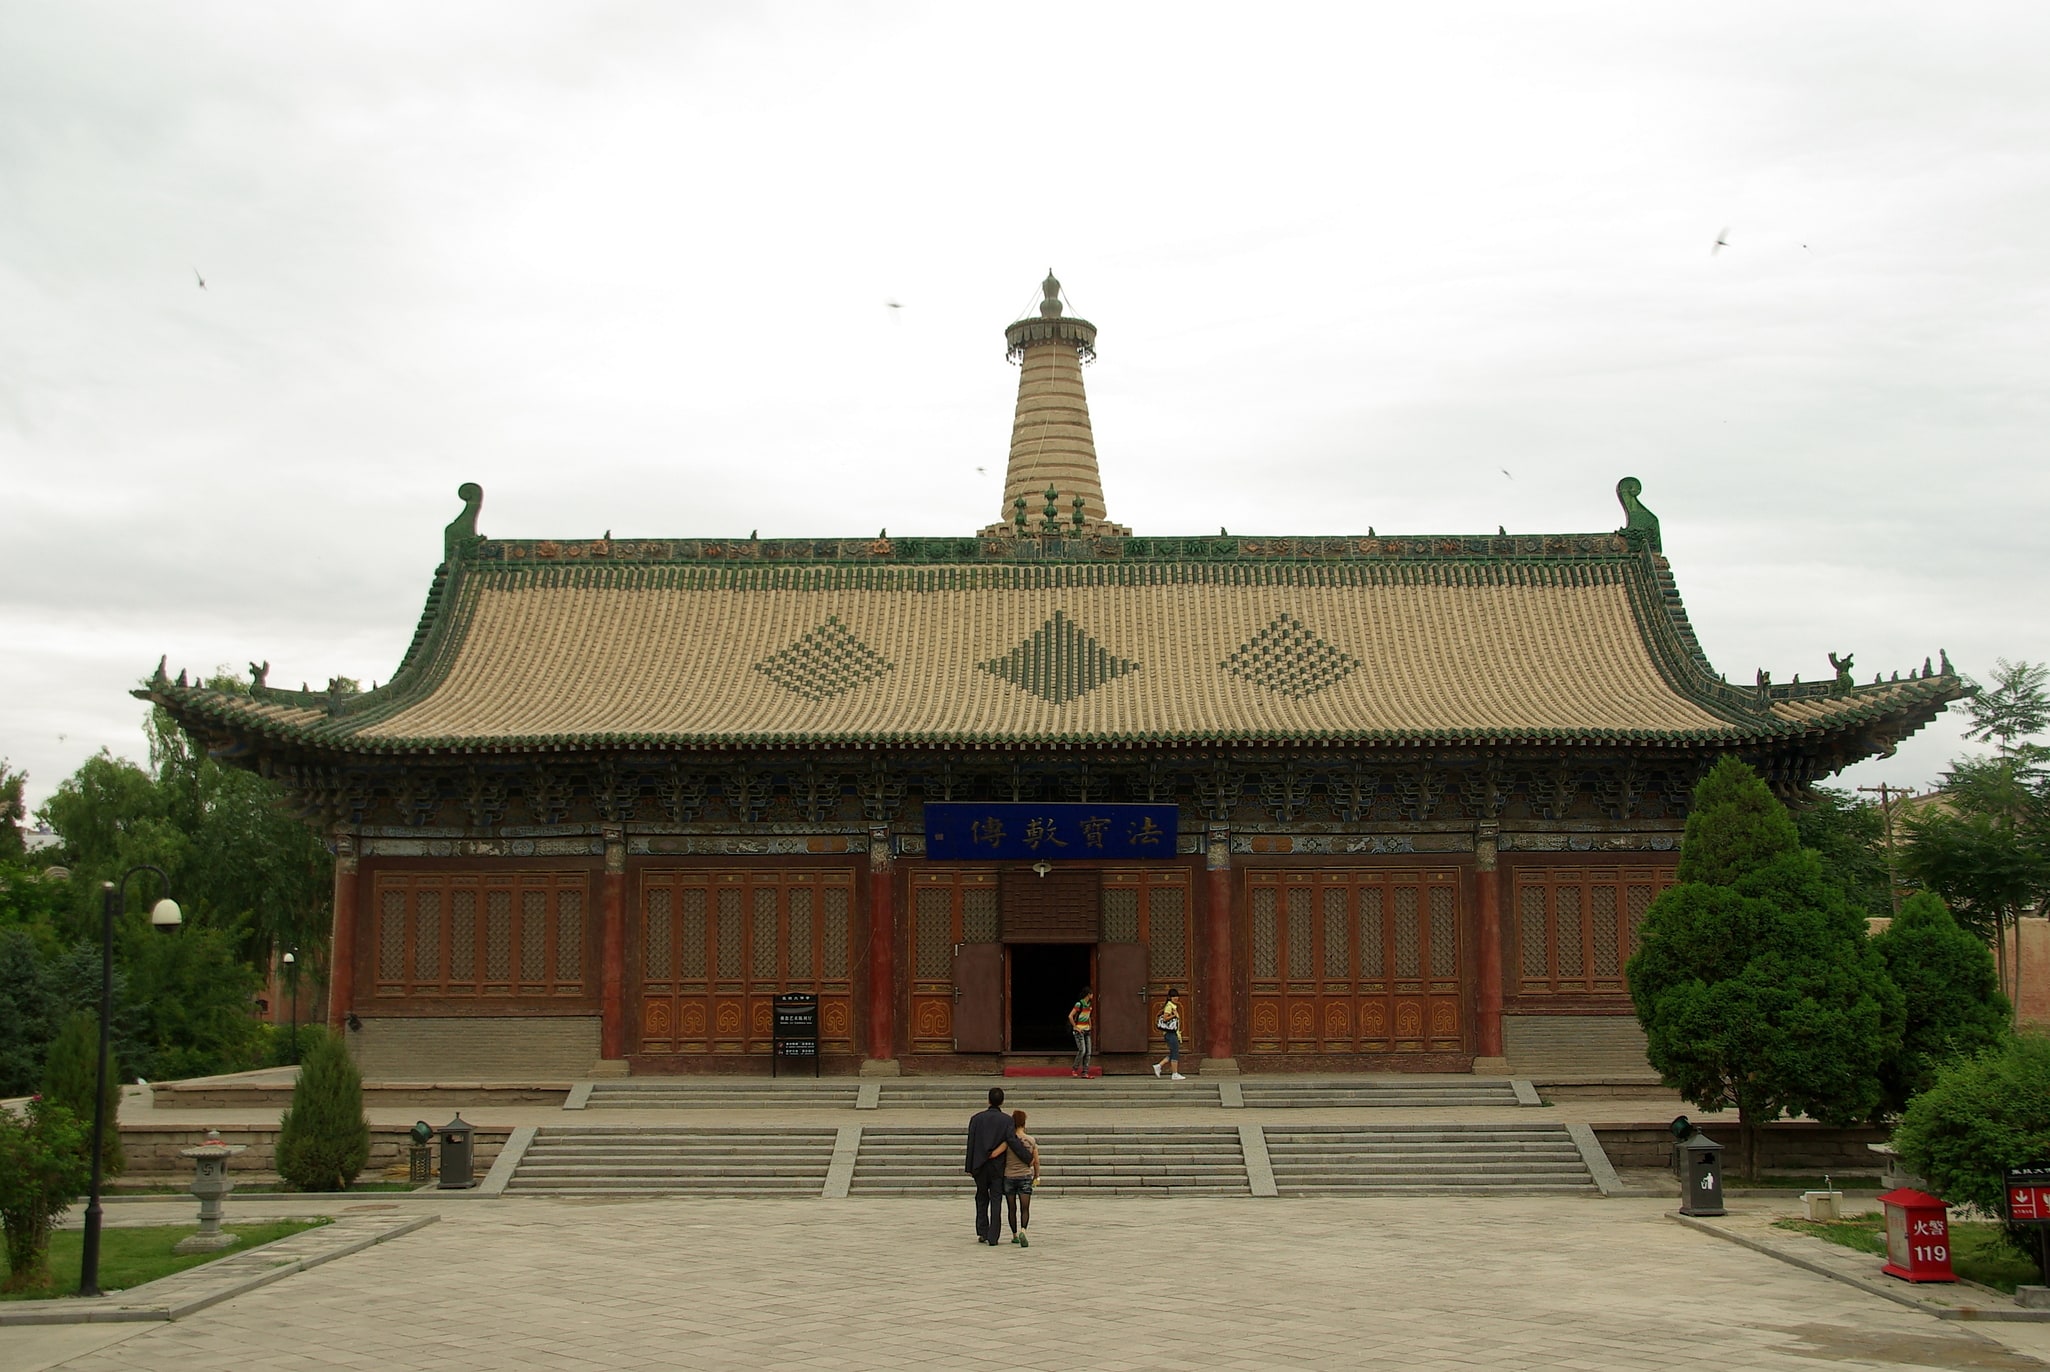 Zhangye, China